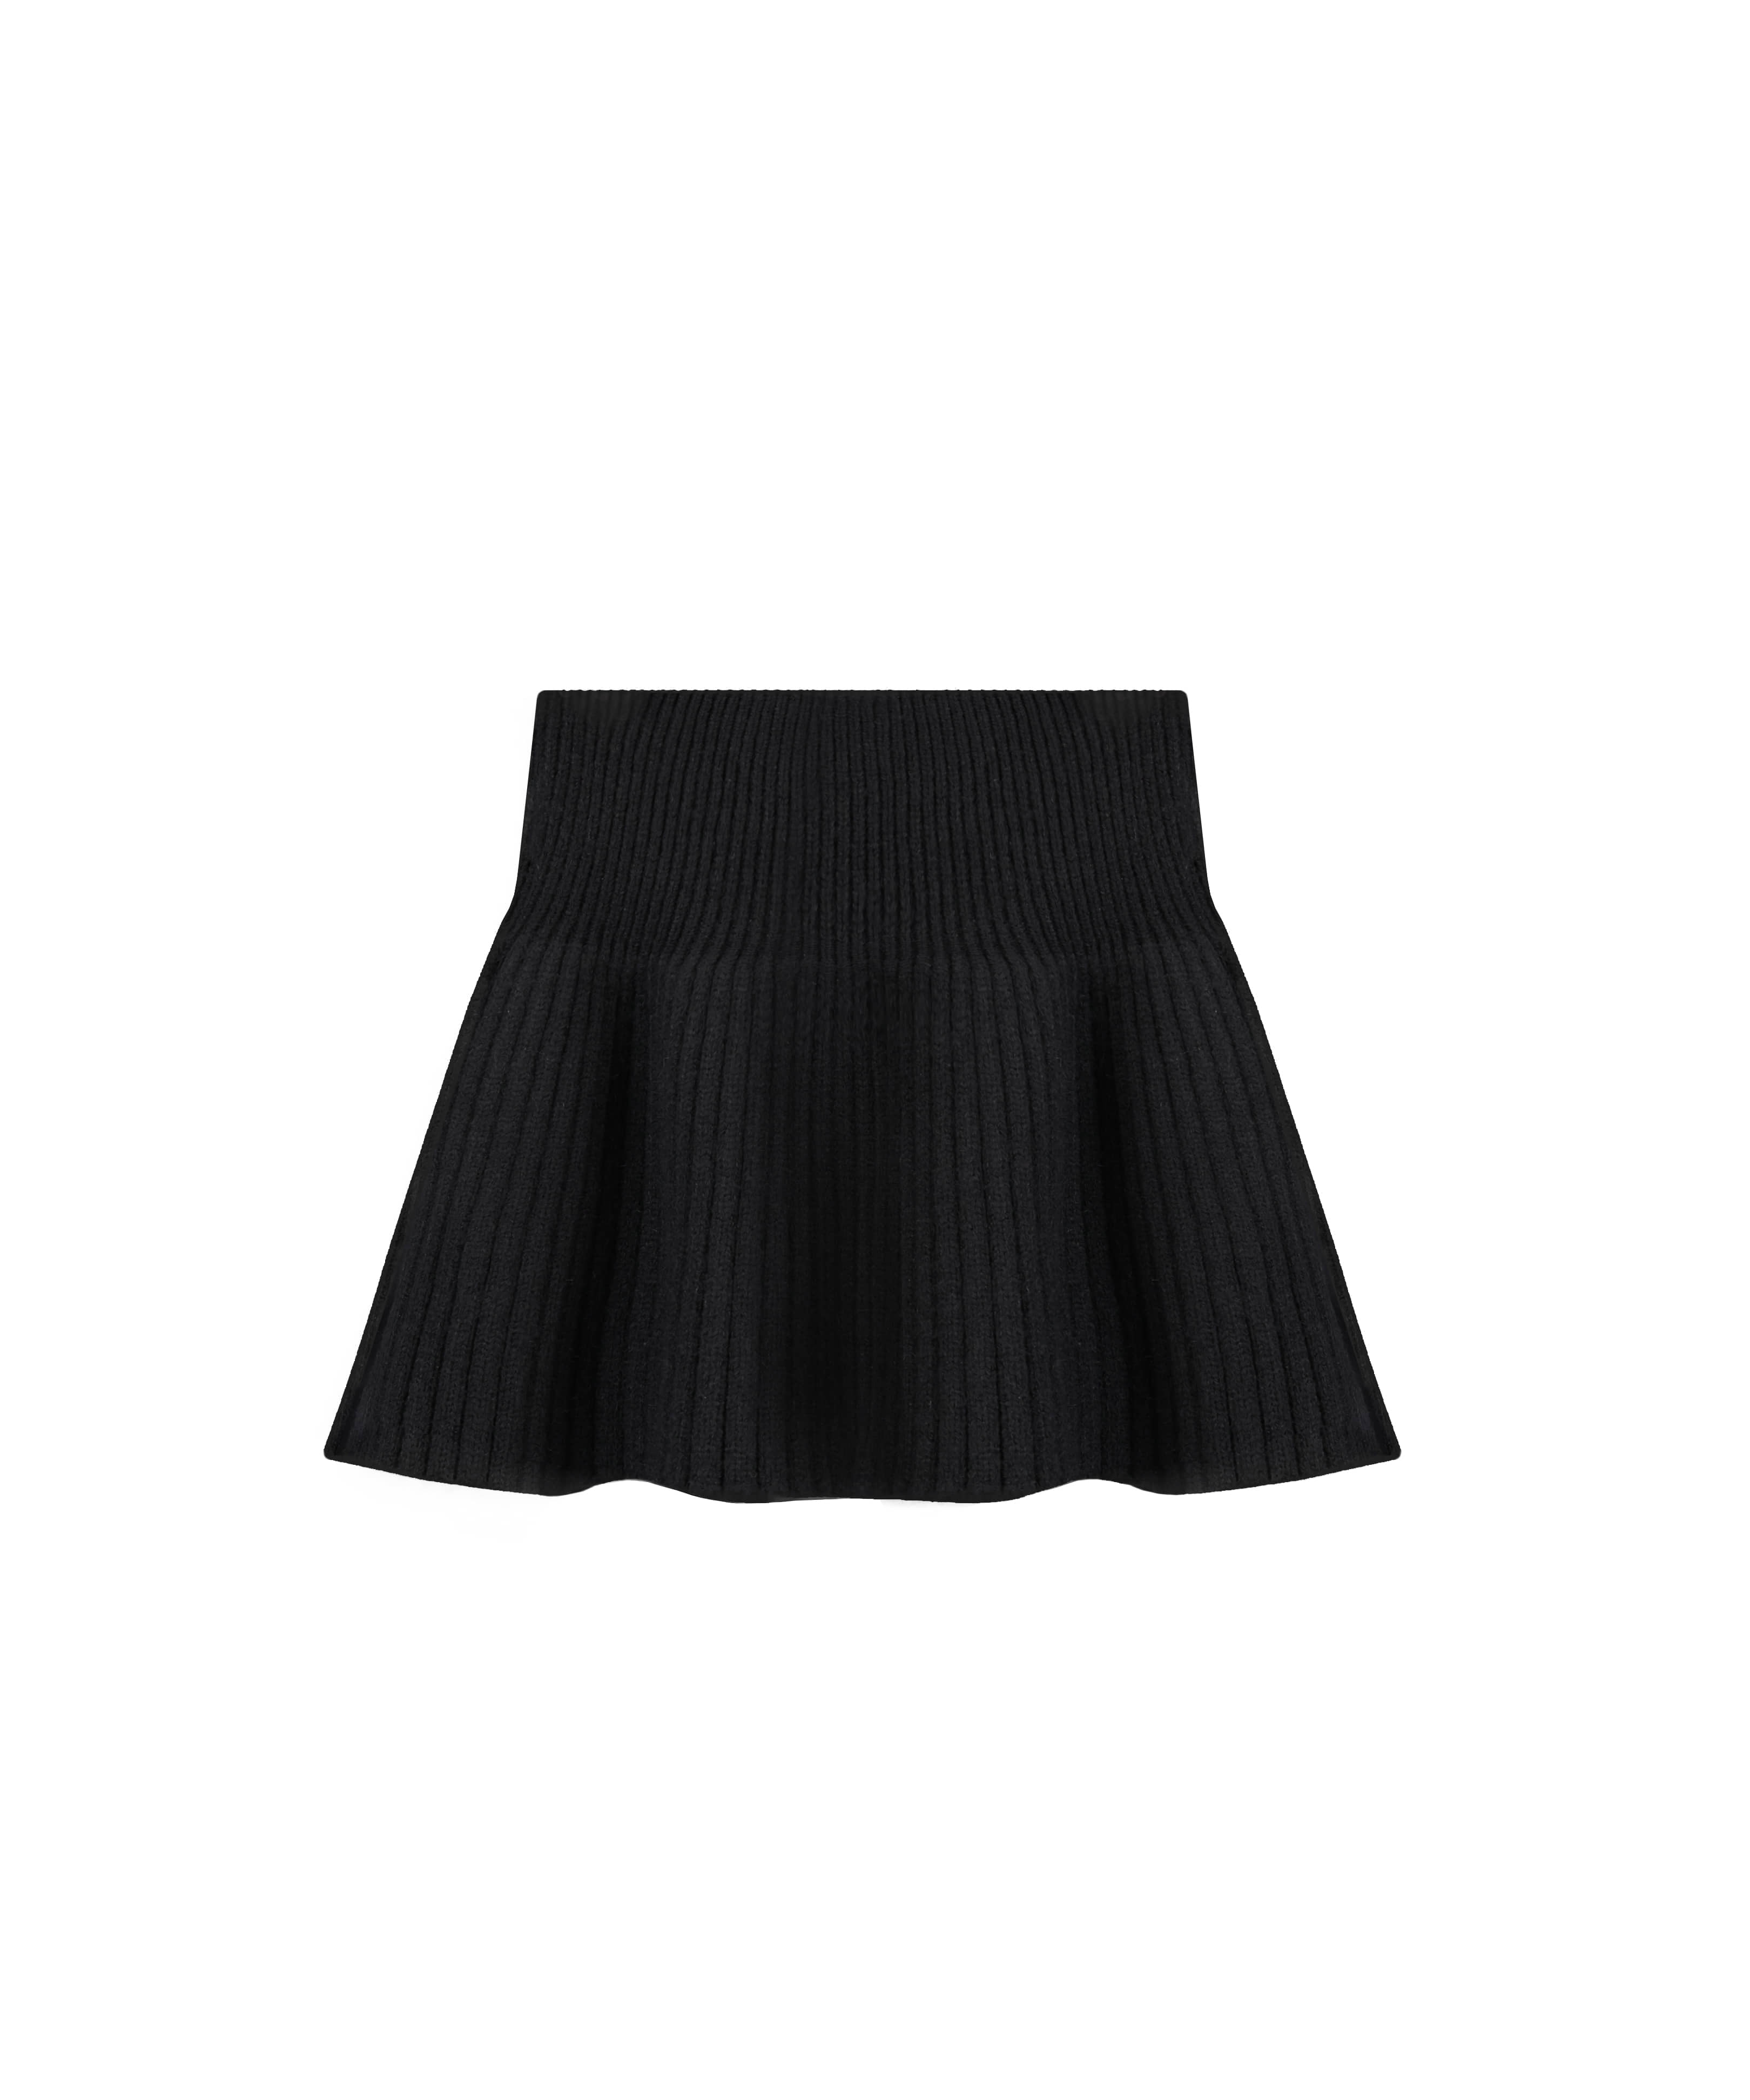 [배송지연] Amelia knit skirt